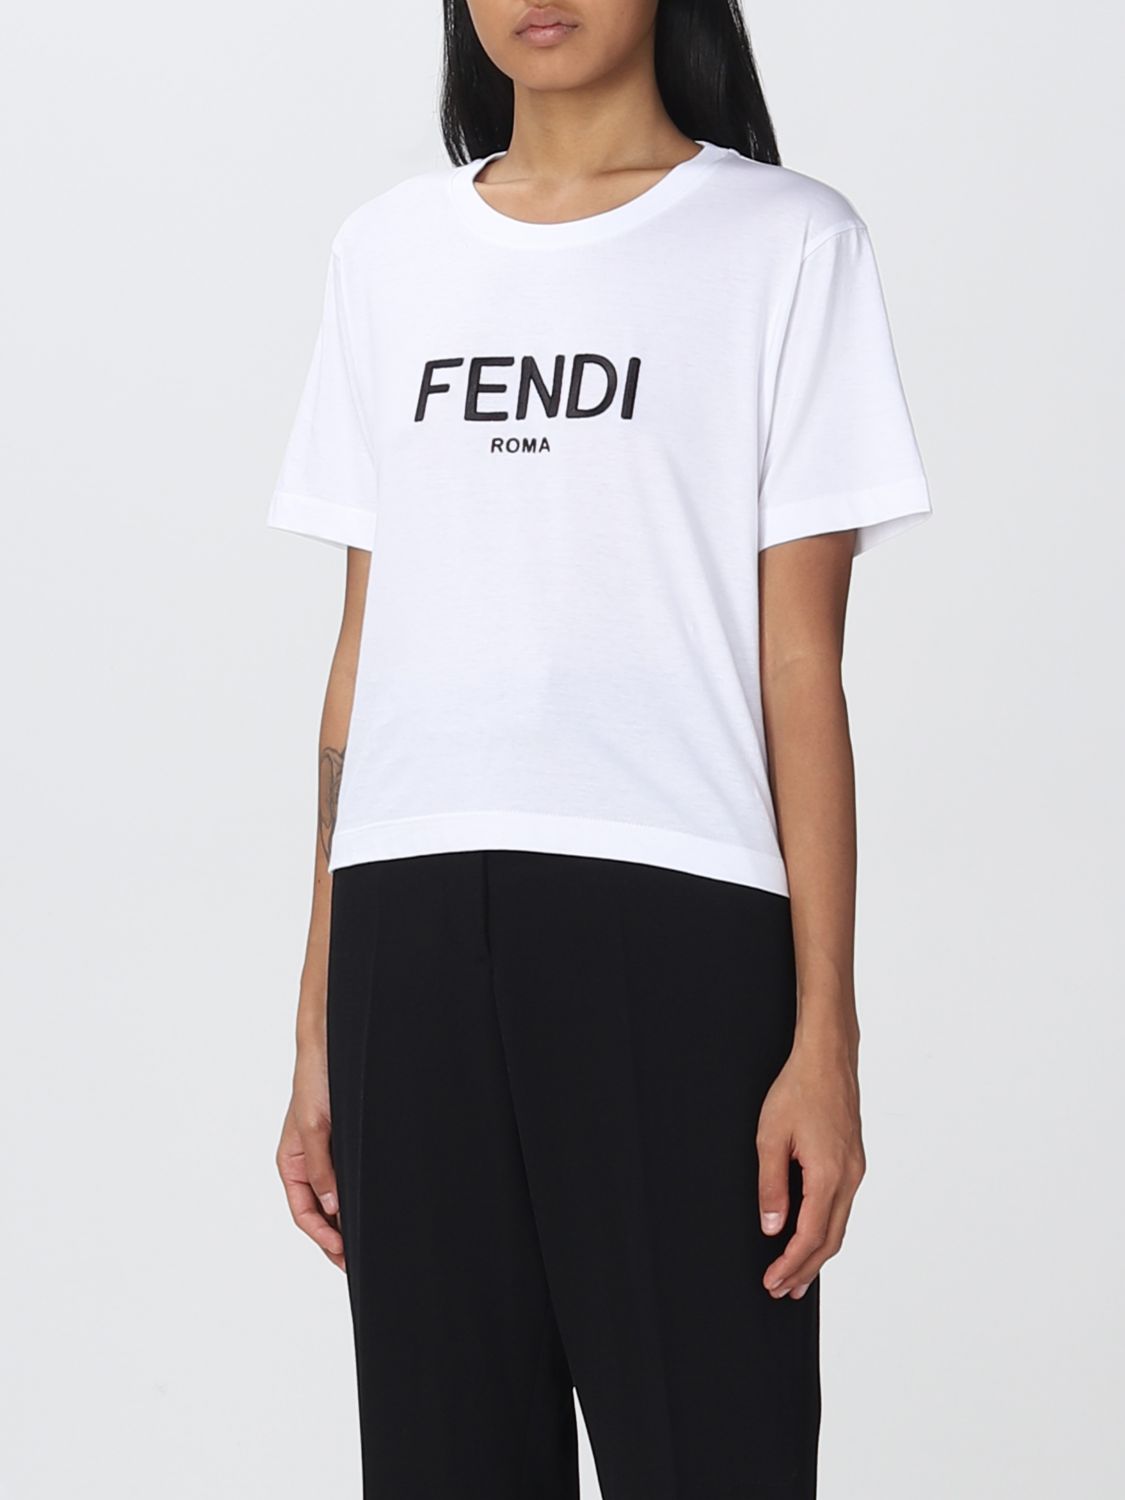 独創的 FENDI メンズTシャツ